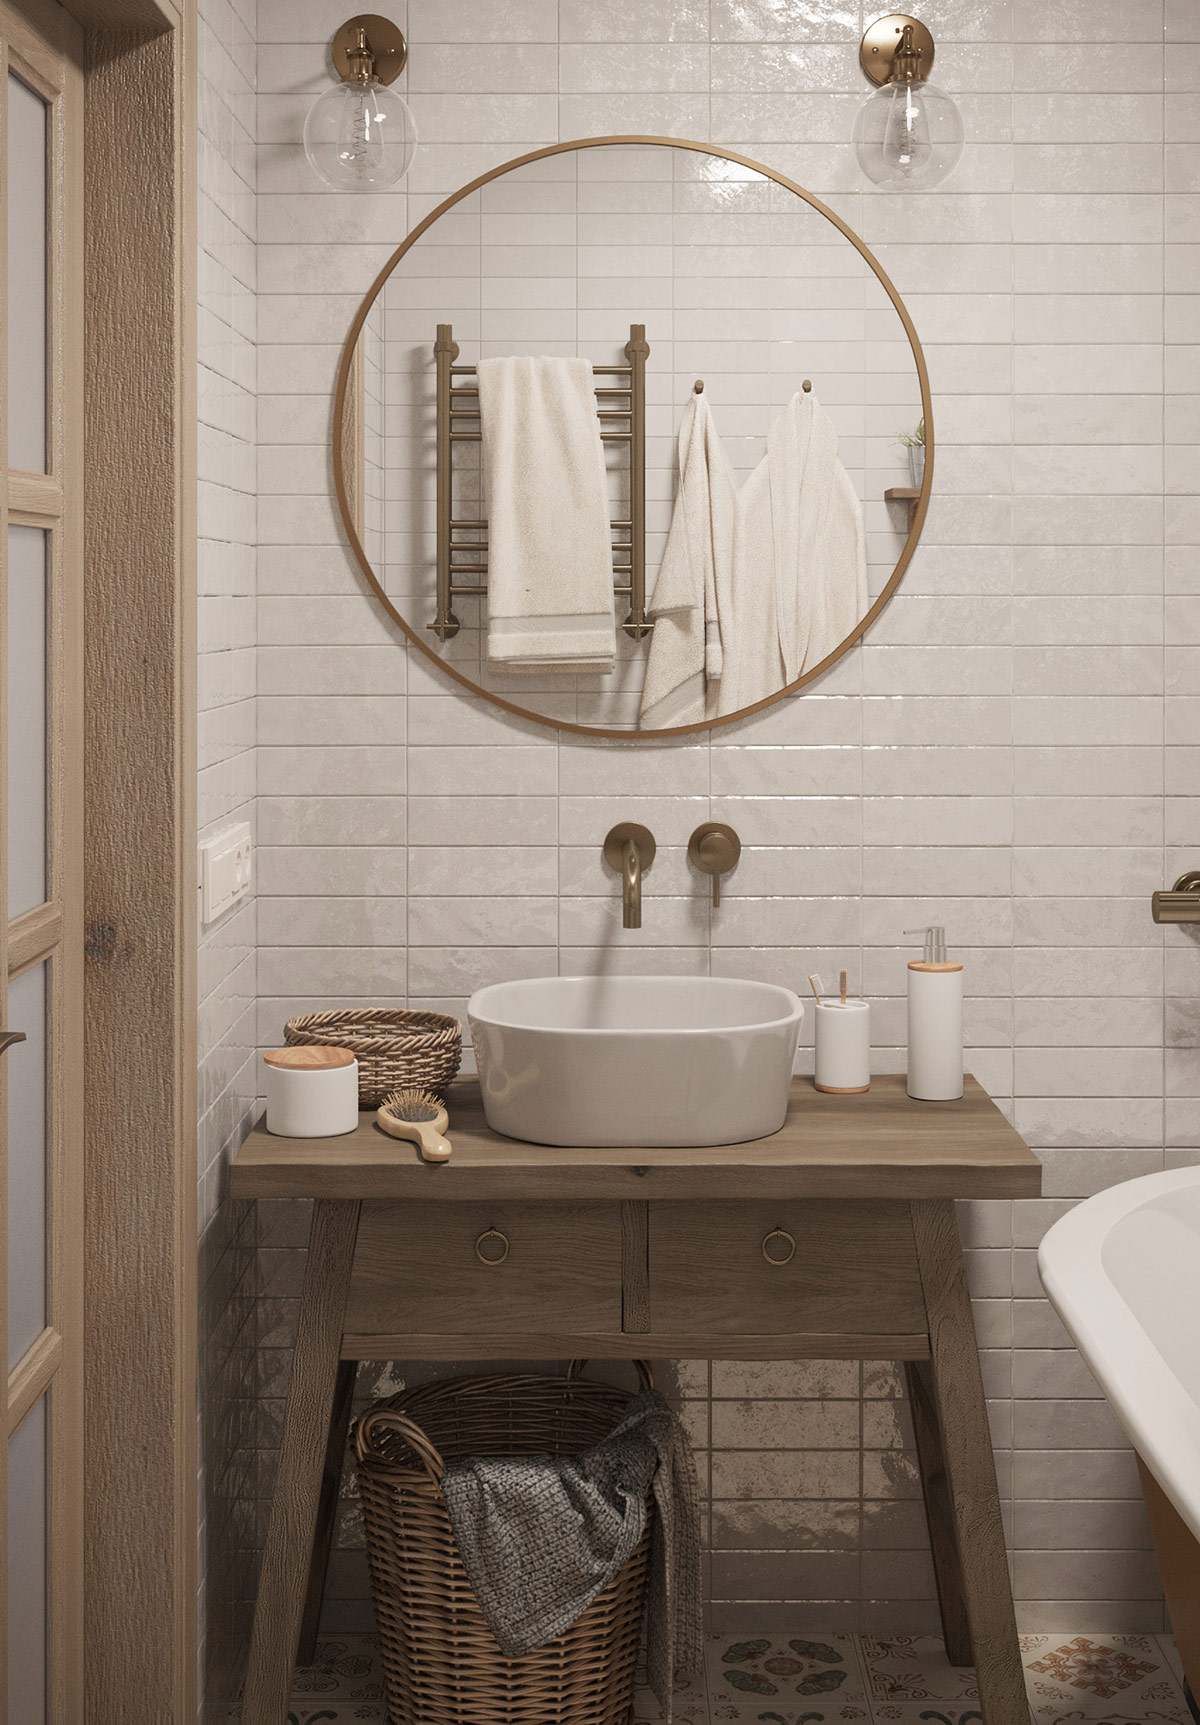 Đồ đạc bằng đồng có tông màu ấm áp, hài hòa với phụ kiện màu gỗ trong phòng tắm căn hộ phong cách Boho.